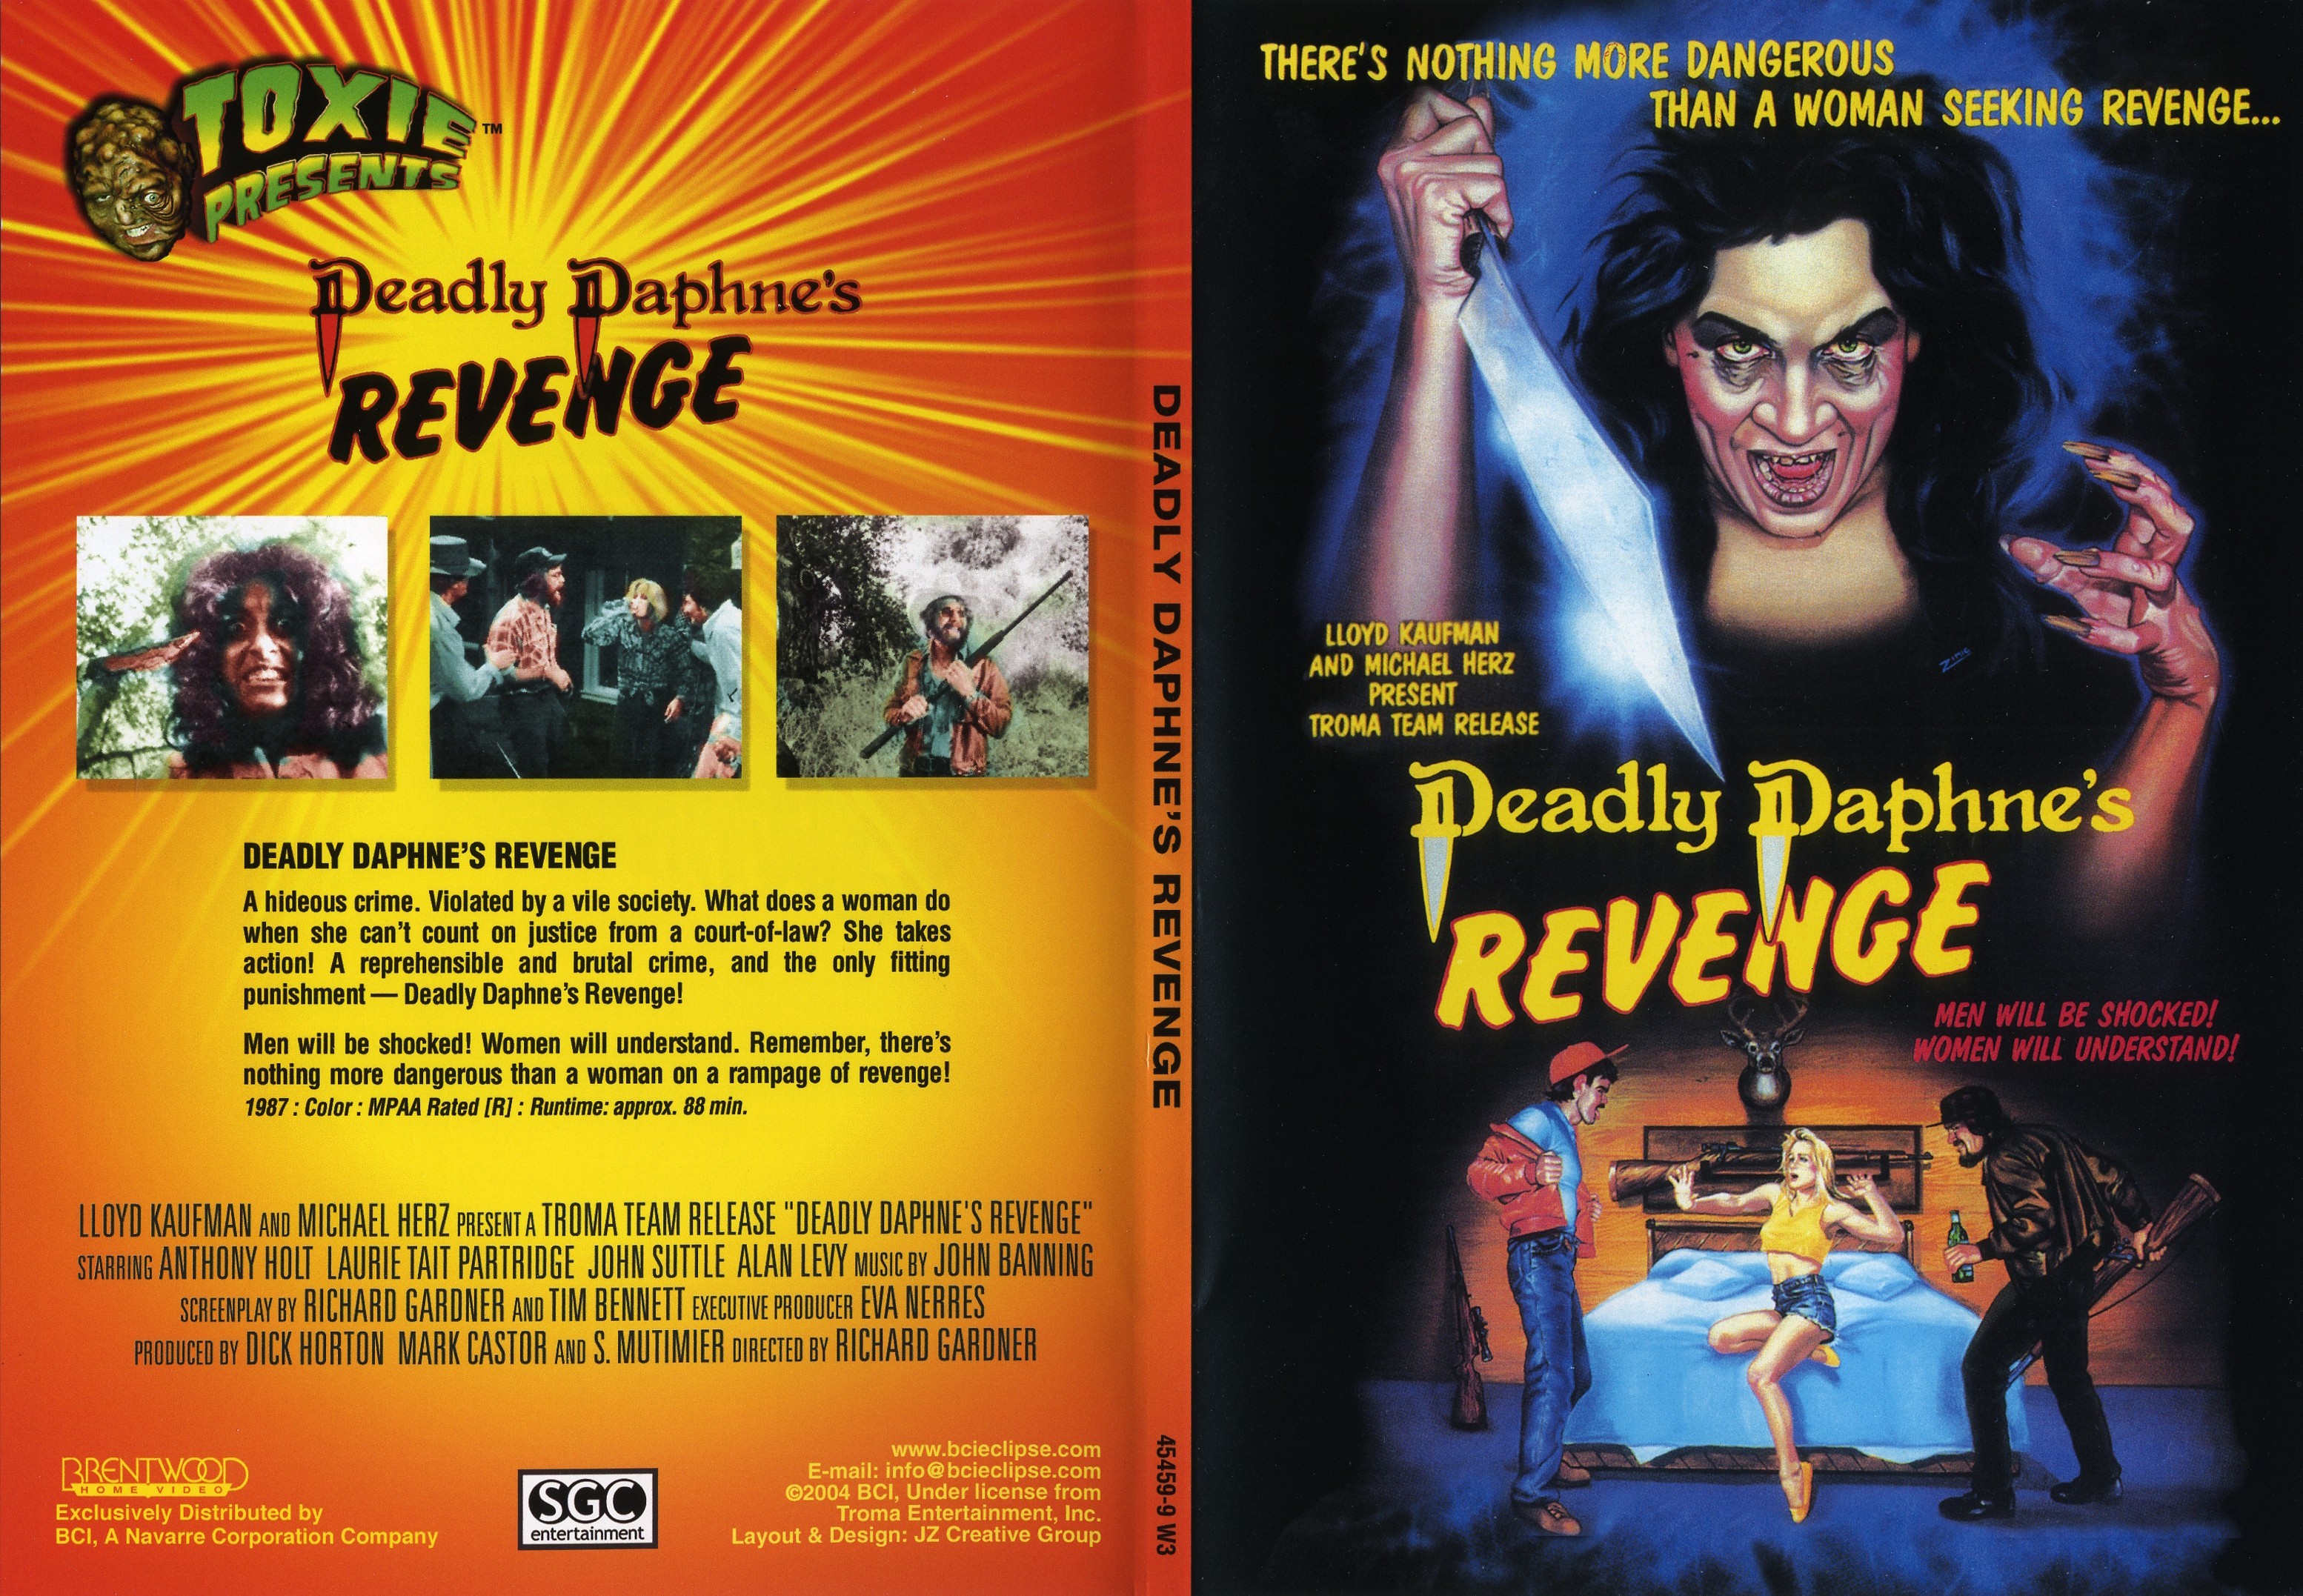 Deadly Daphne's Revenge - Troma Team DVD